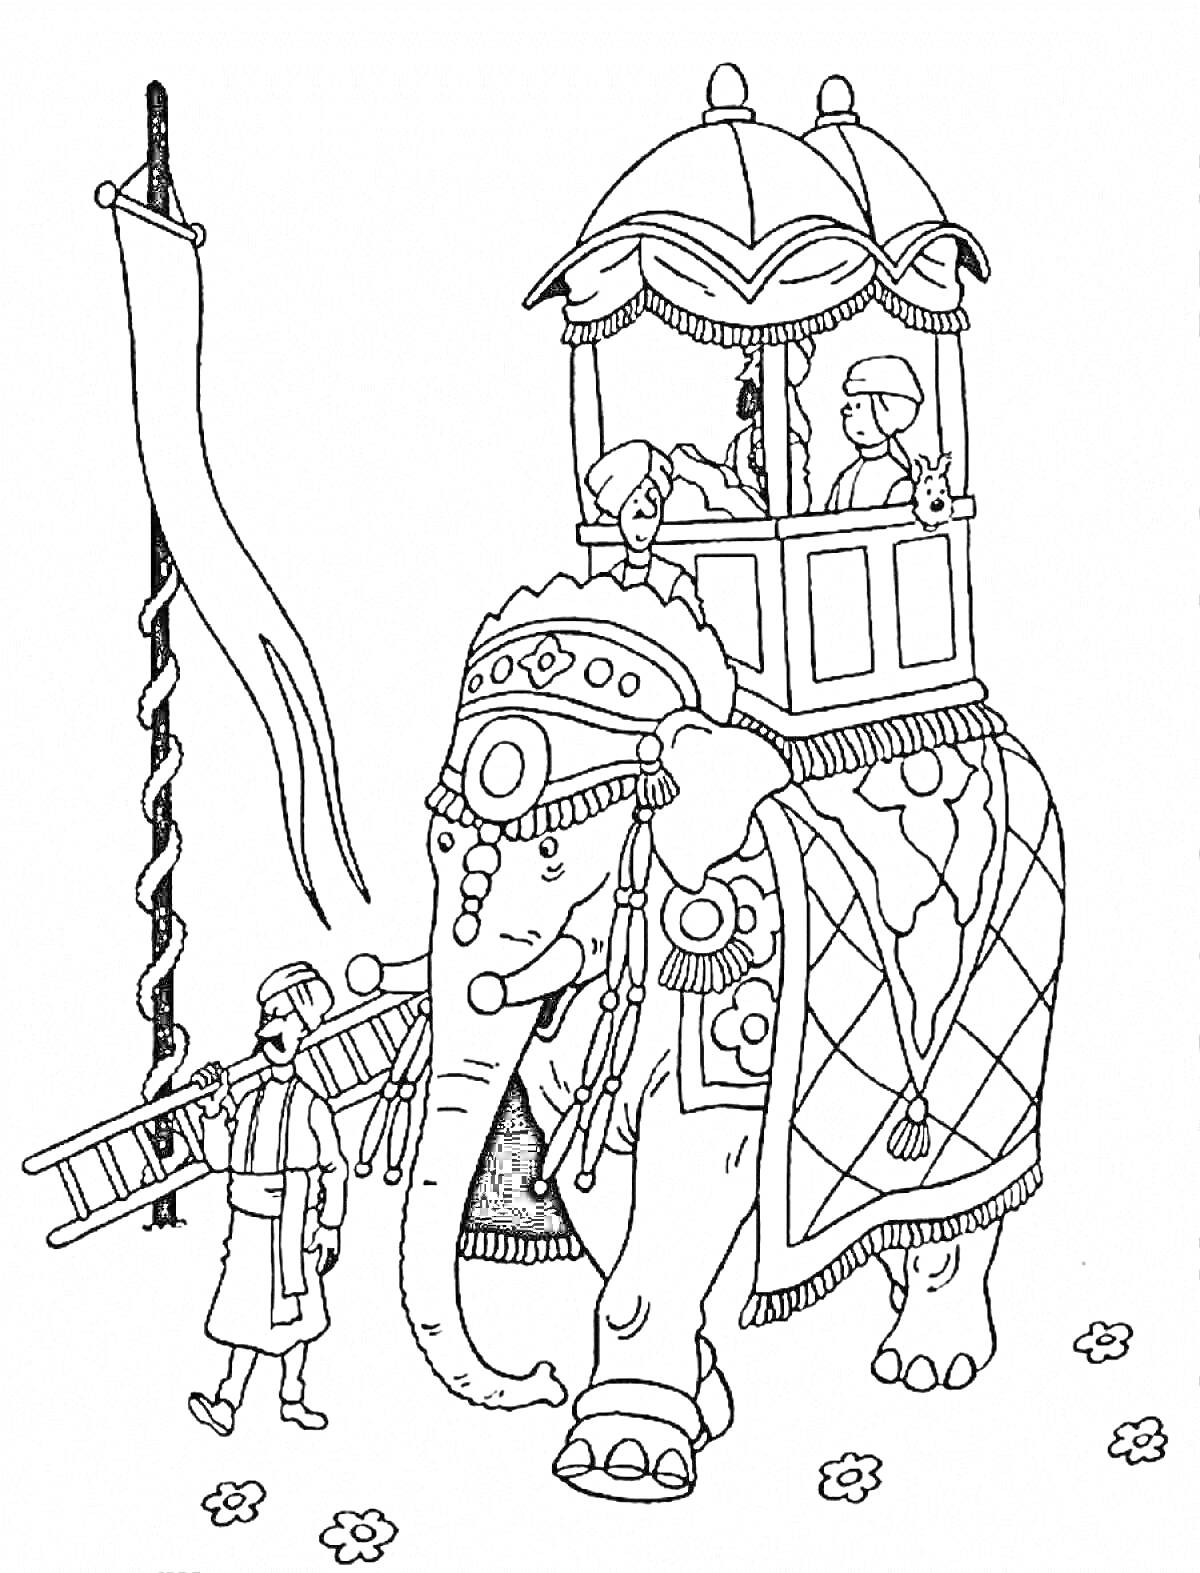 Раскраска Индийский слон с паланкином, люди на спине слона, махаут с лестницей возле слона, флаг и цветы на земле